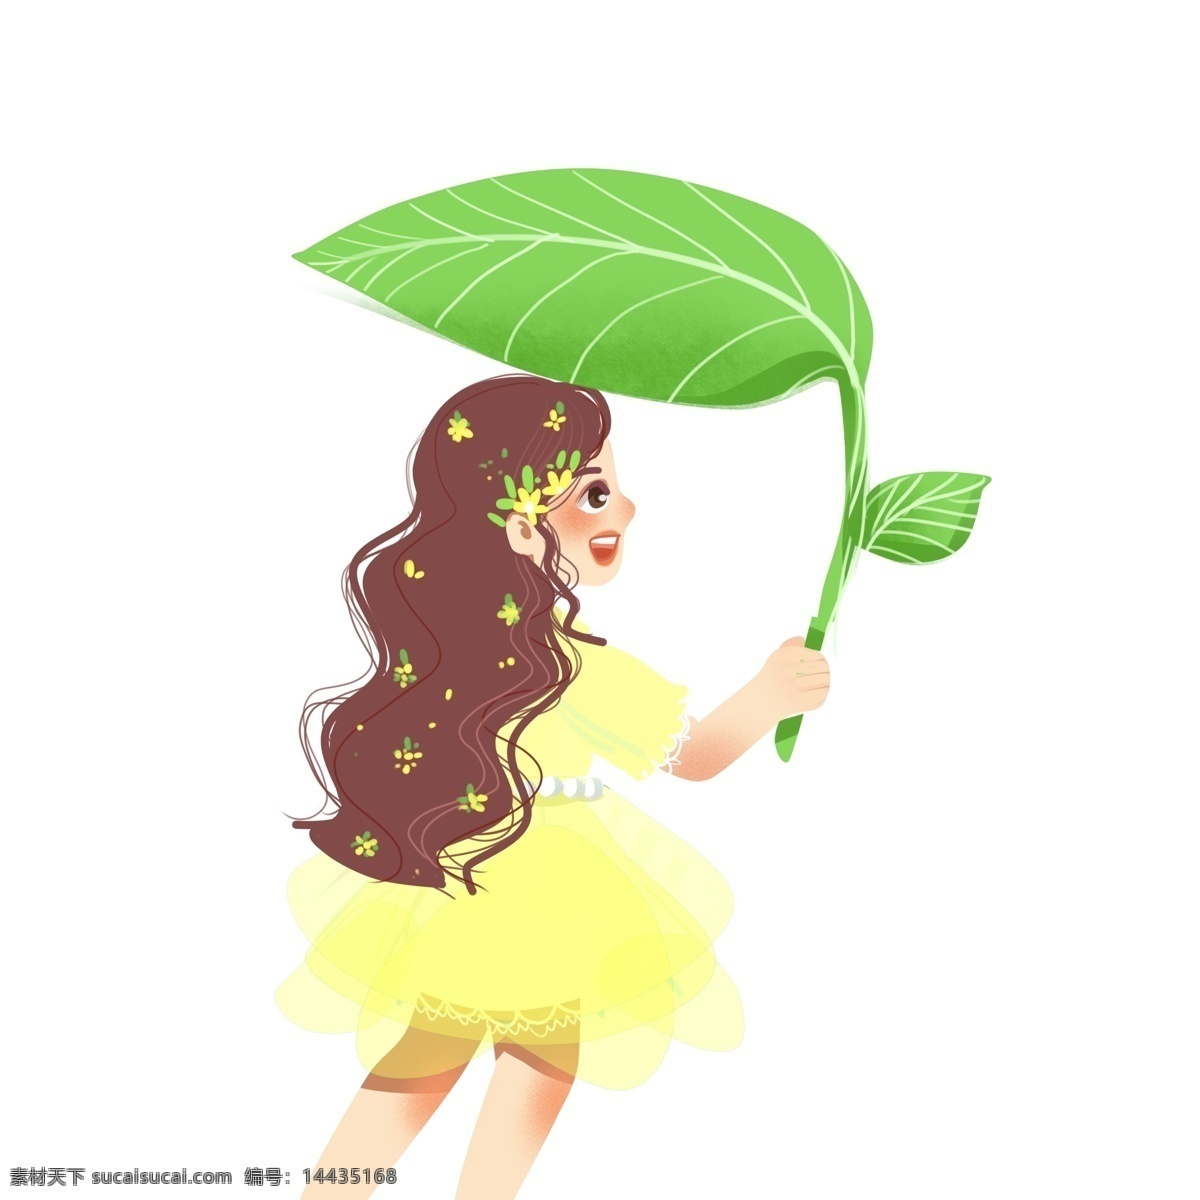 手绘 治愈 系 一个 撑 树叶 伞 女孩子 治愈系 插画 女孩 女生 树叶伞 唯美 卡通设计